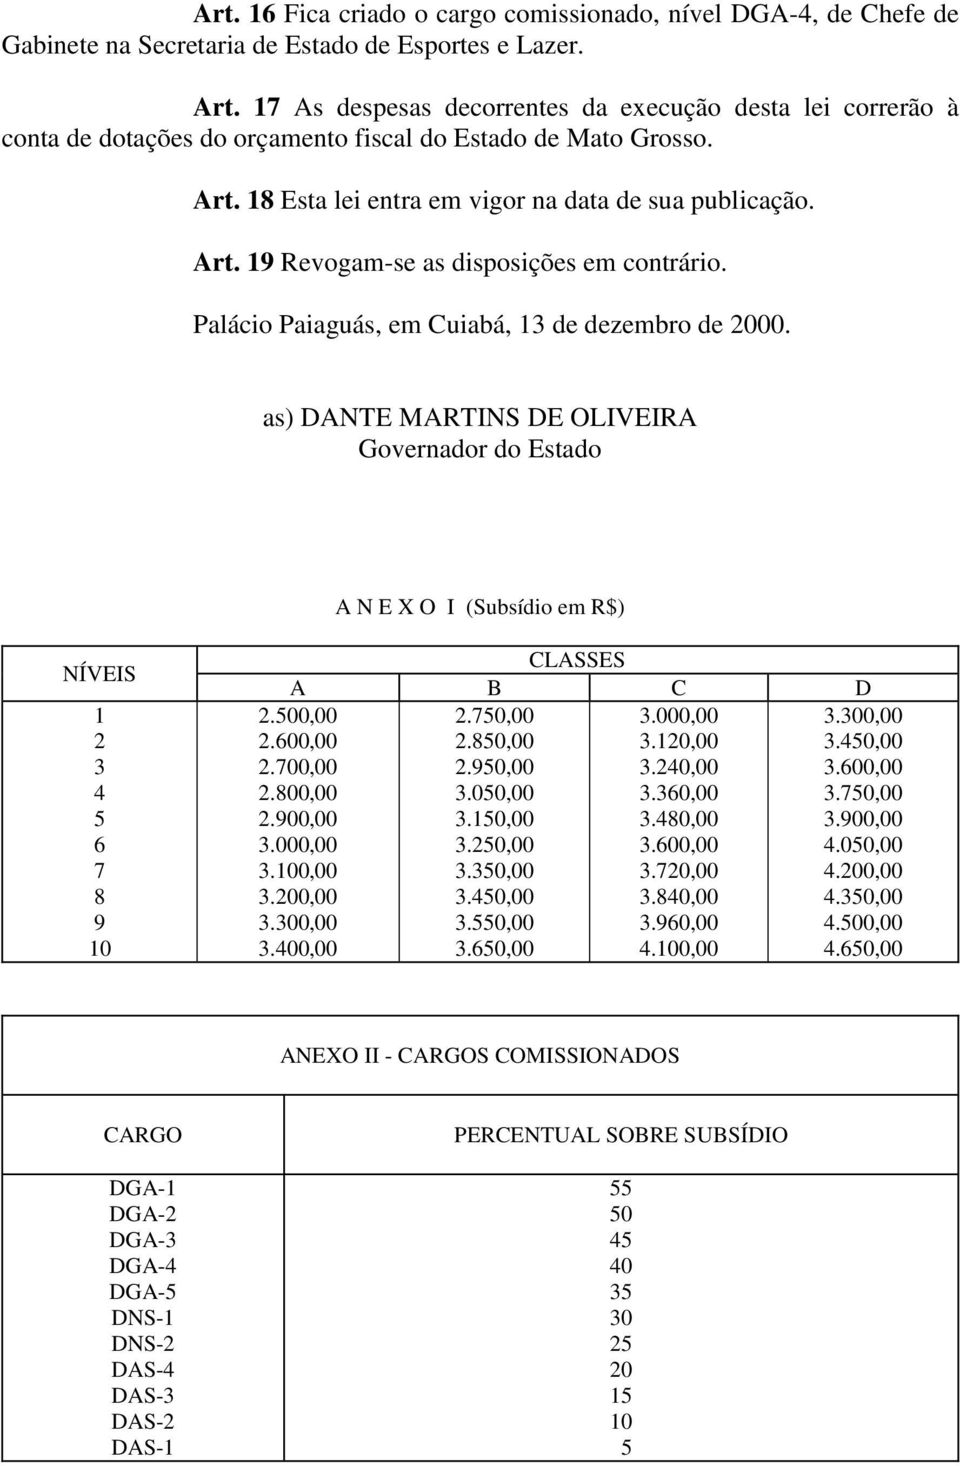 Palácio Paiaguás, em Cuiabá, 13 de dezembro de 2000. as) DANTE MARTINS DE OLIVEIRA Governador do Estado A N E X O I (Subsídio em R$) NÍVEIS 1 2 3 4 5 6 7 8 9 10 CLASSES A B C D 2.750,00 3.000,00 2.